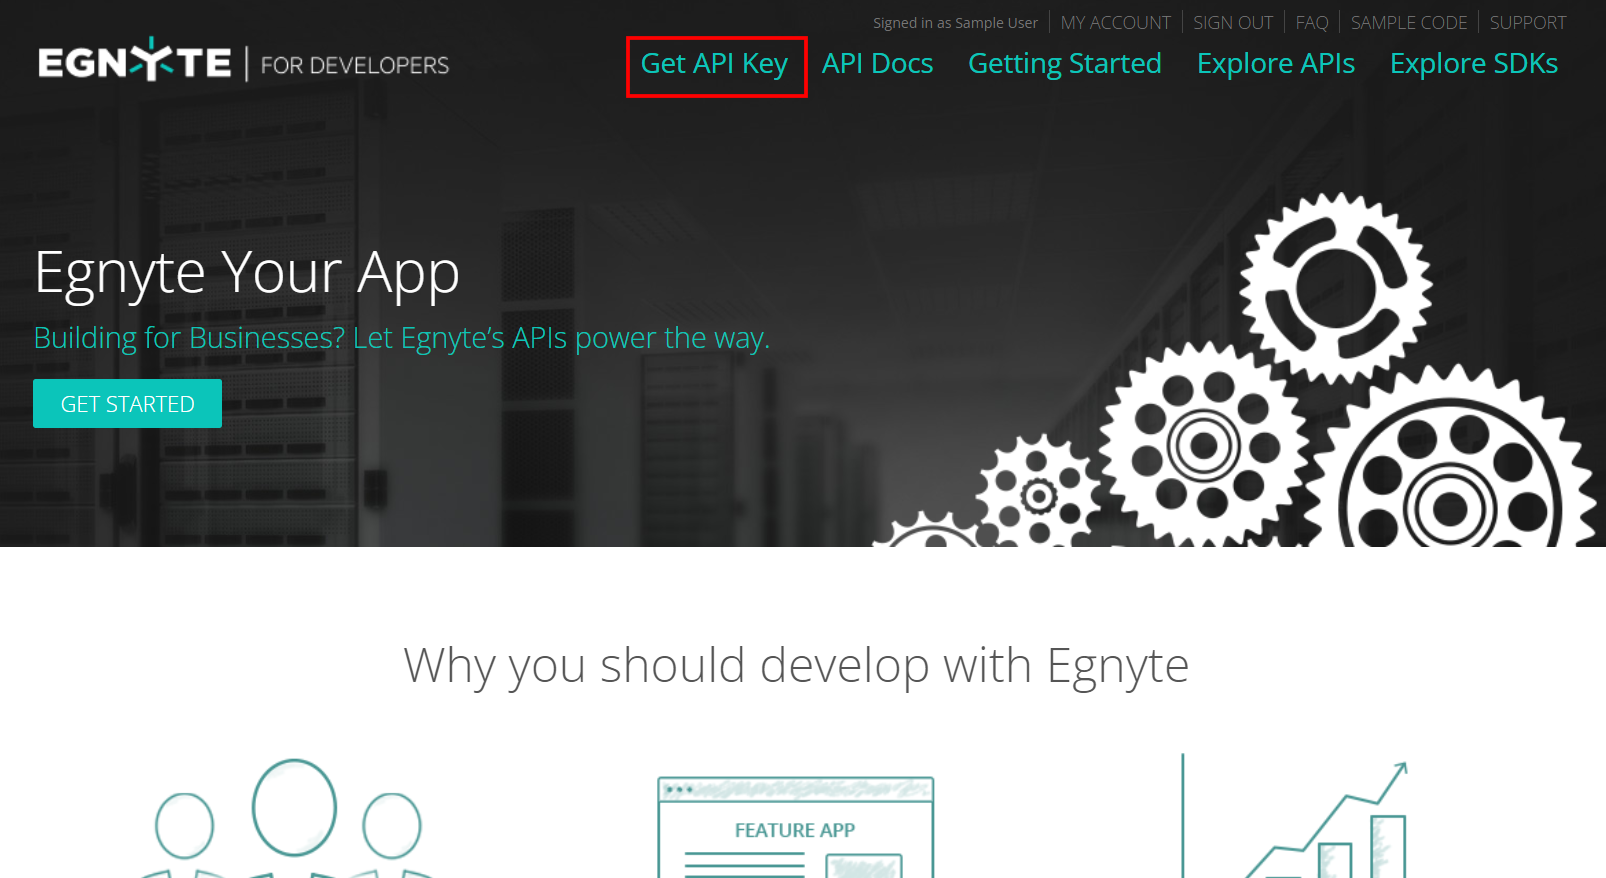 Egnyte-Get-API-Key